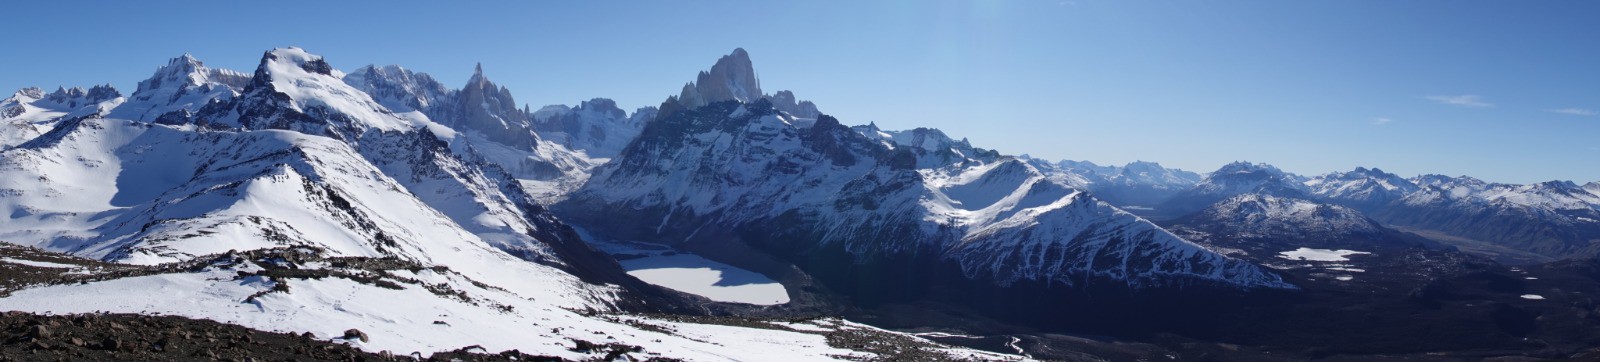 Panorama du Cerro Grande au Cerro Electrico